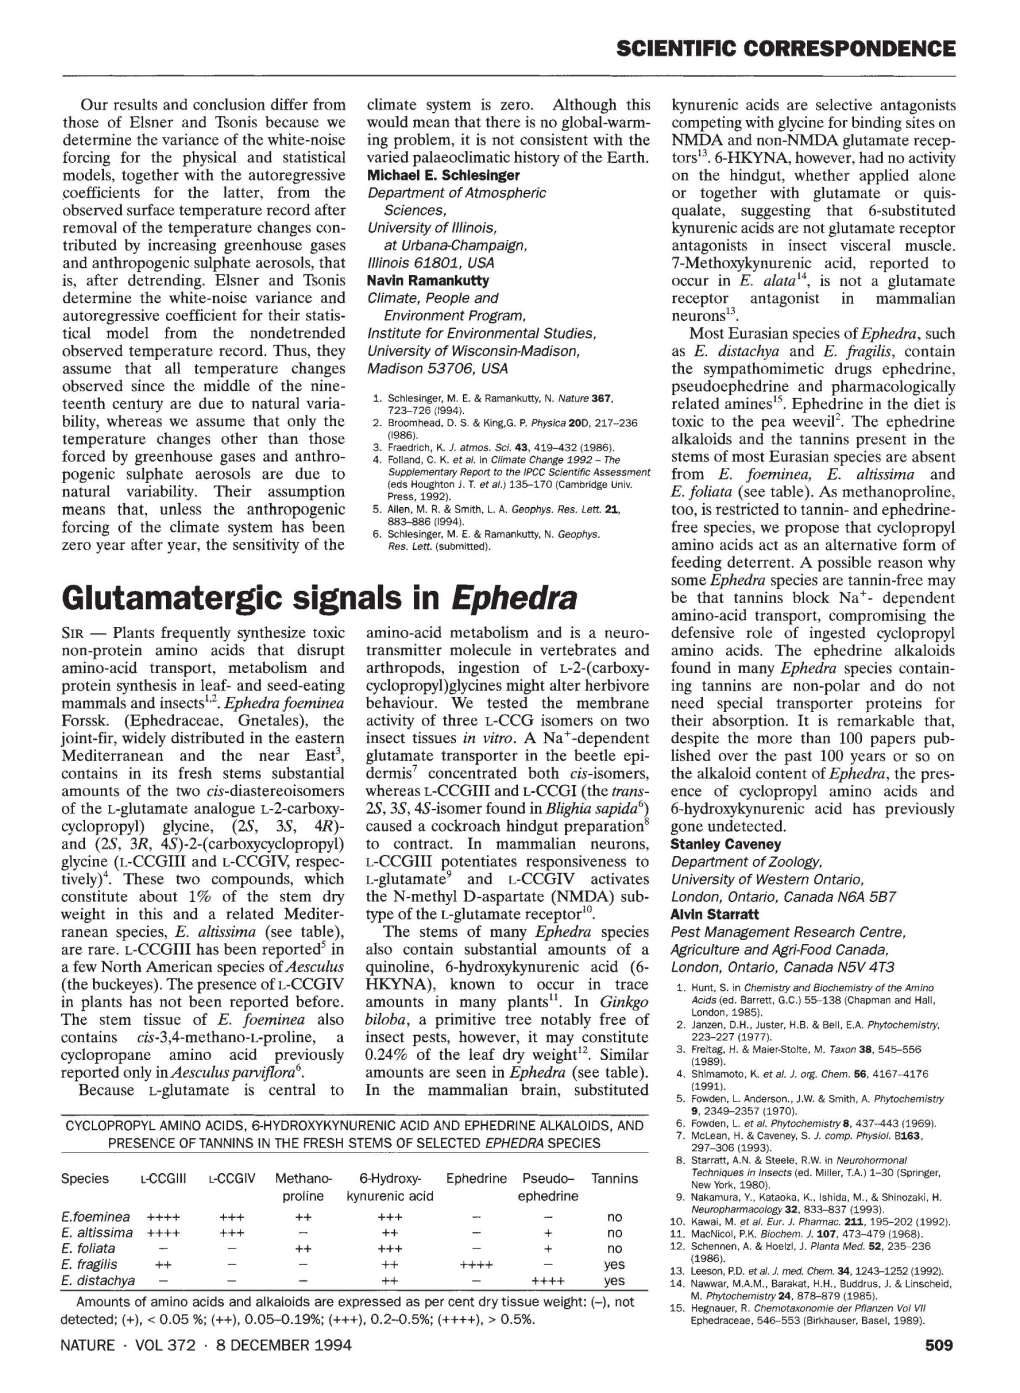 Glutamatergic Signals in Ephedra